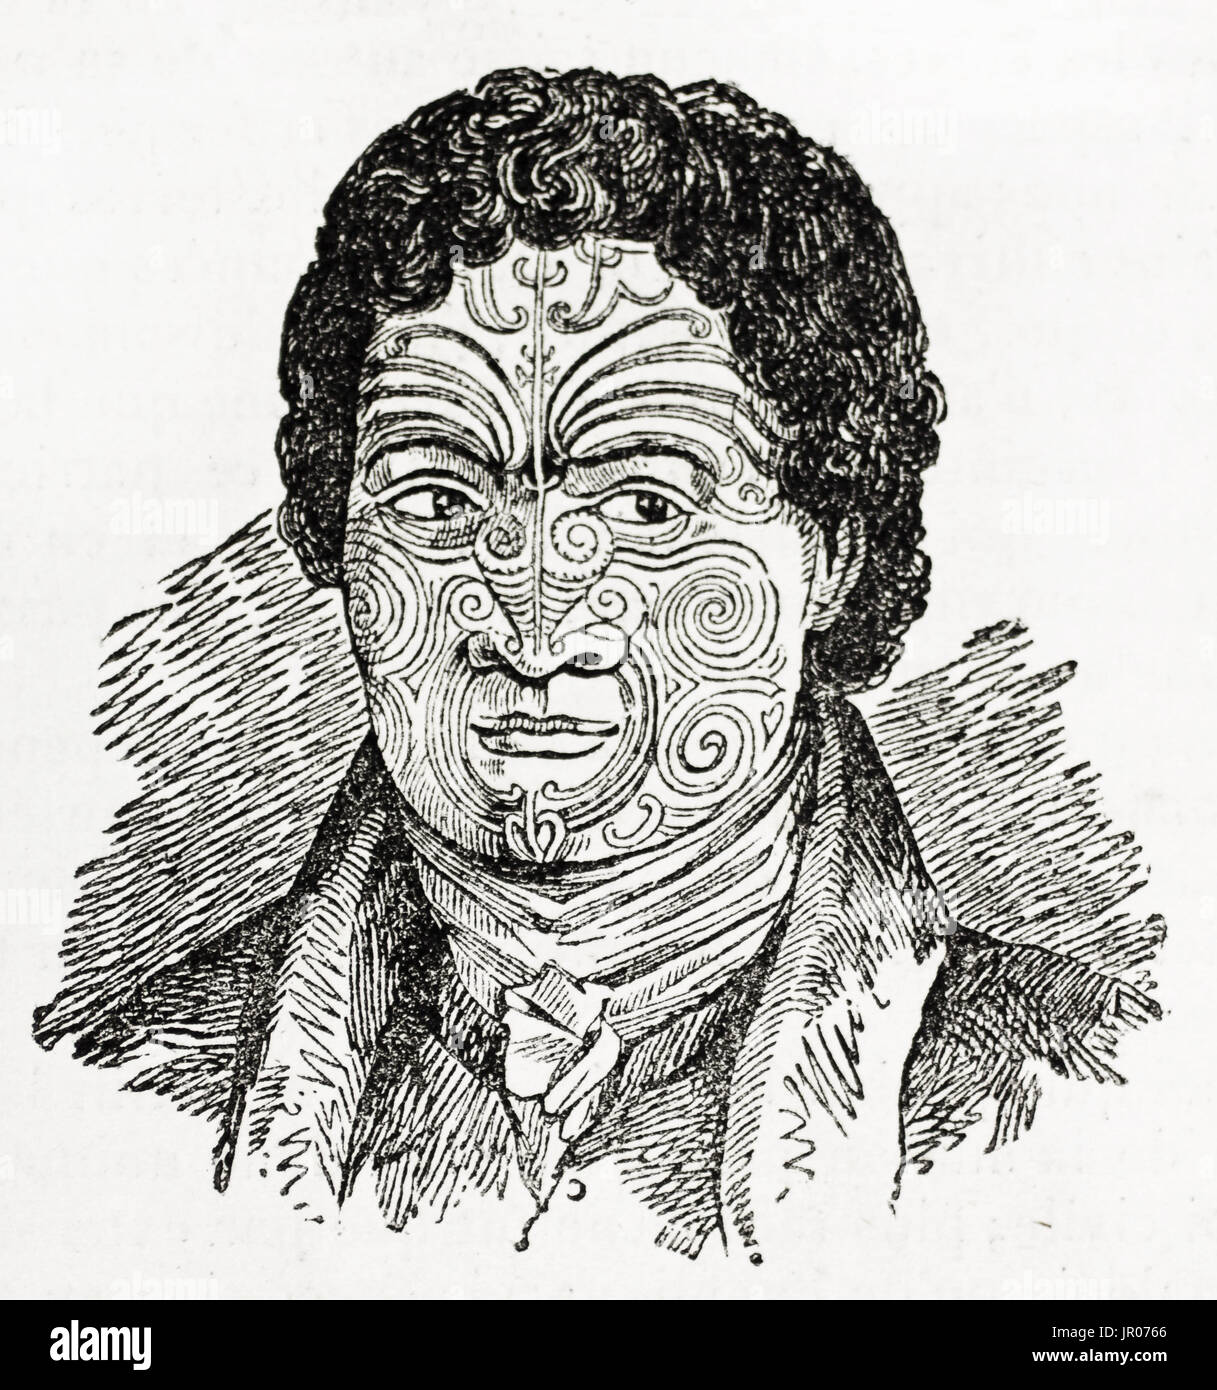 Vieille illustration d'homme maori en Nouvelle-Zélande avec ta moko dans son visage (type particulier de tattoo ciselés, plutôt que percé). Par auteur inconnu Banque D'Images